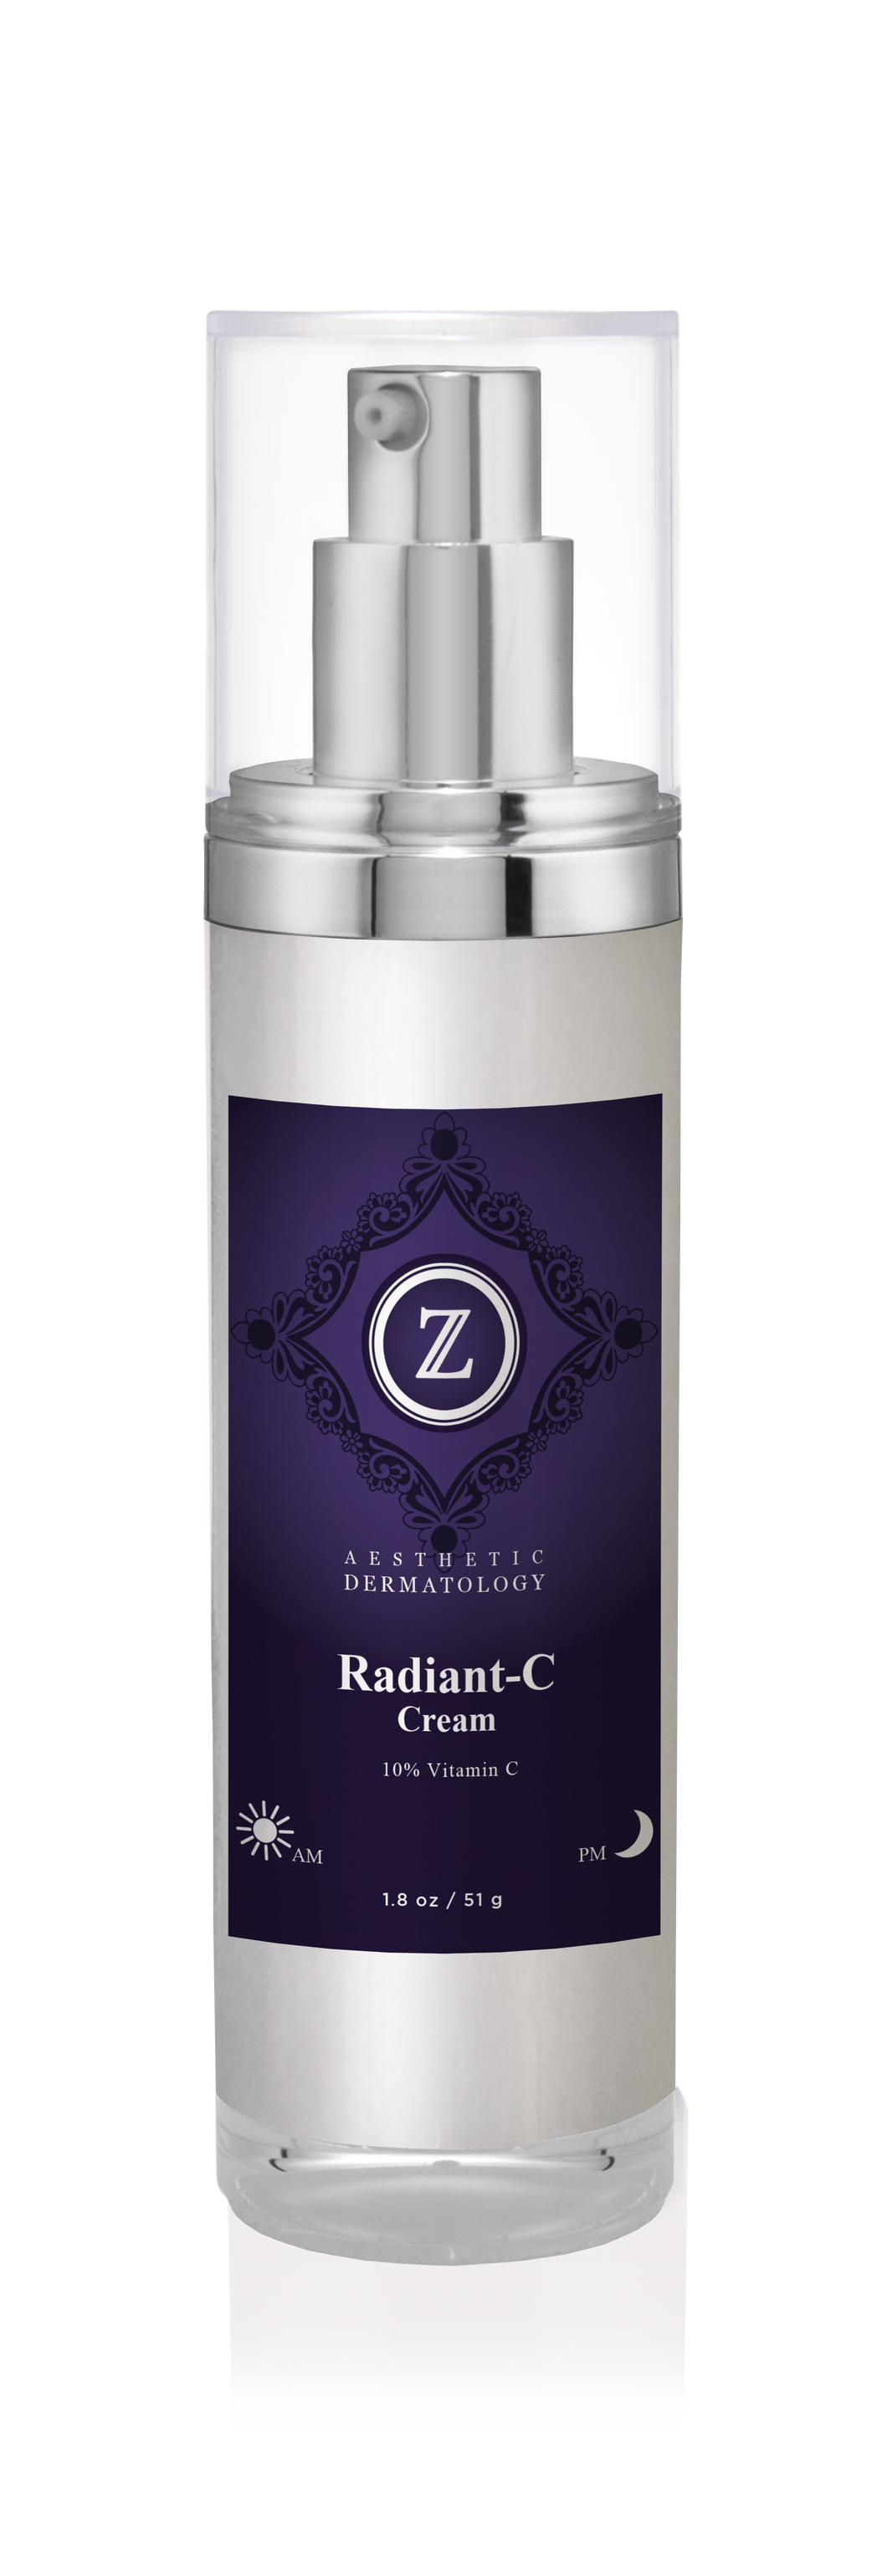 Radiant-C Cream- 10% Vitamin C